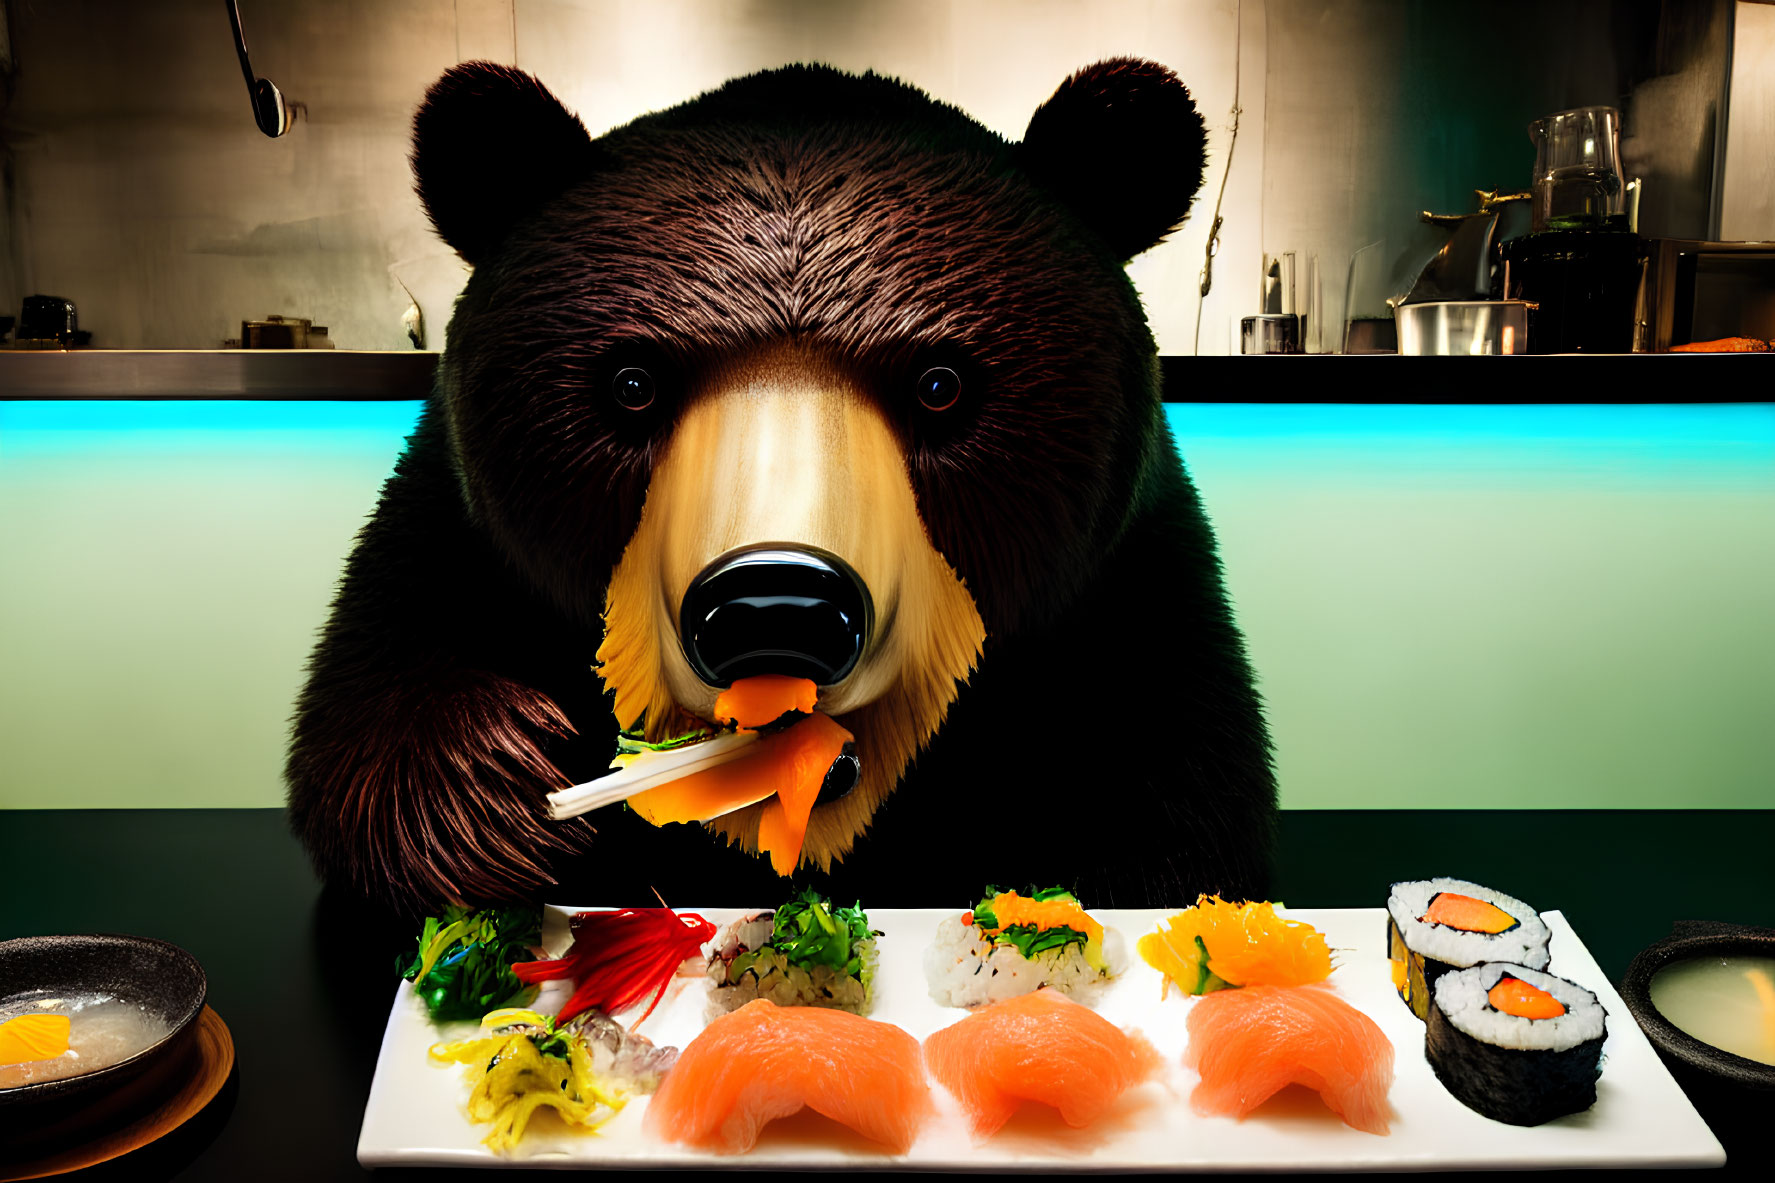 Large Bear Sculpture Enjoying Sushi in Modern Kitchen